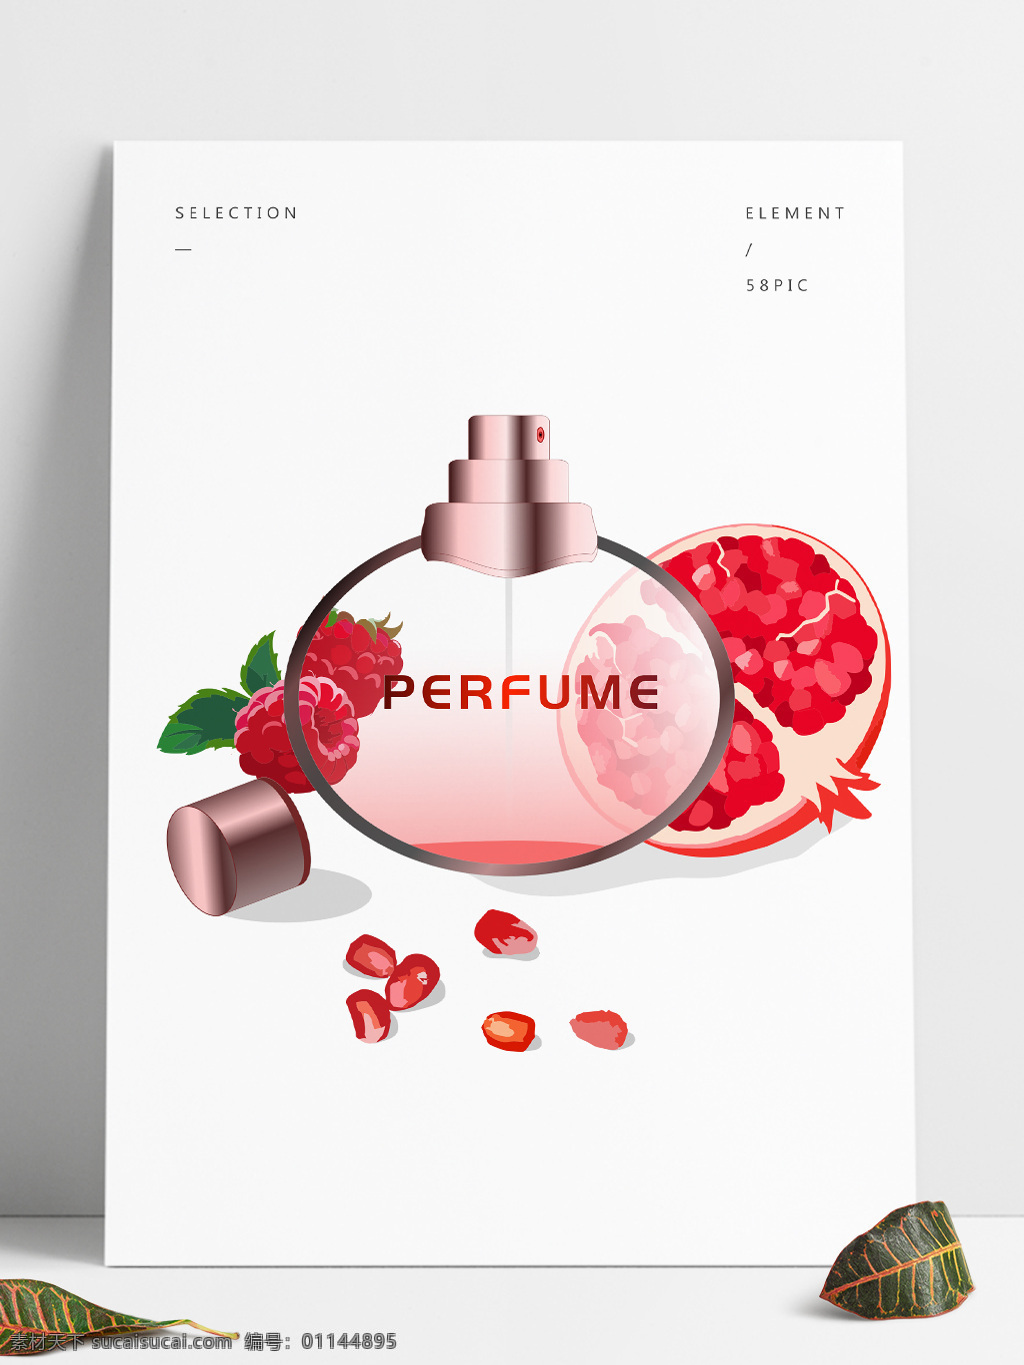 手绘 石榴 树莓 果香 系列 香水 矢量图 矢量 perfume